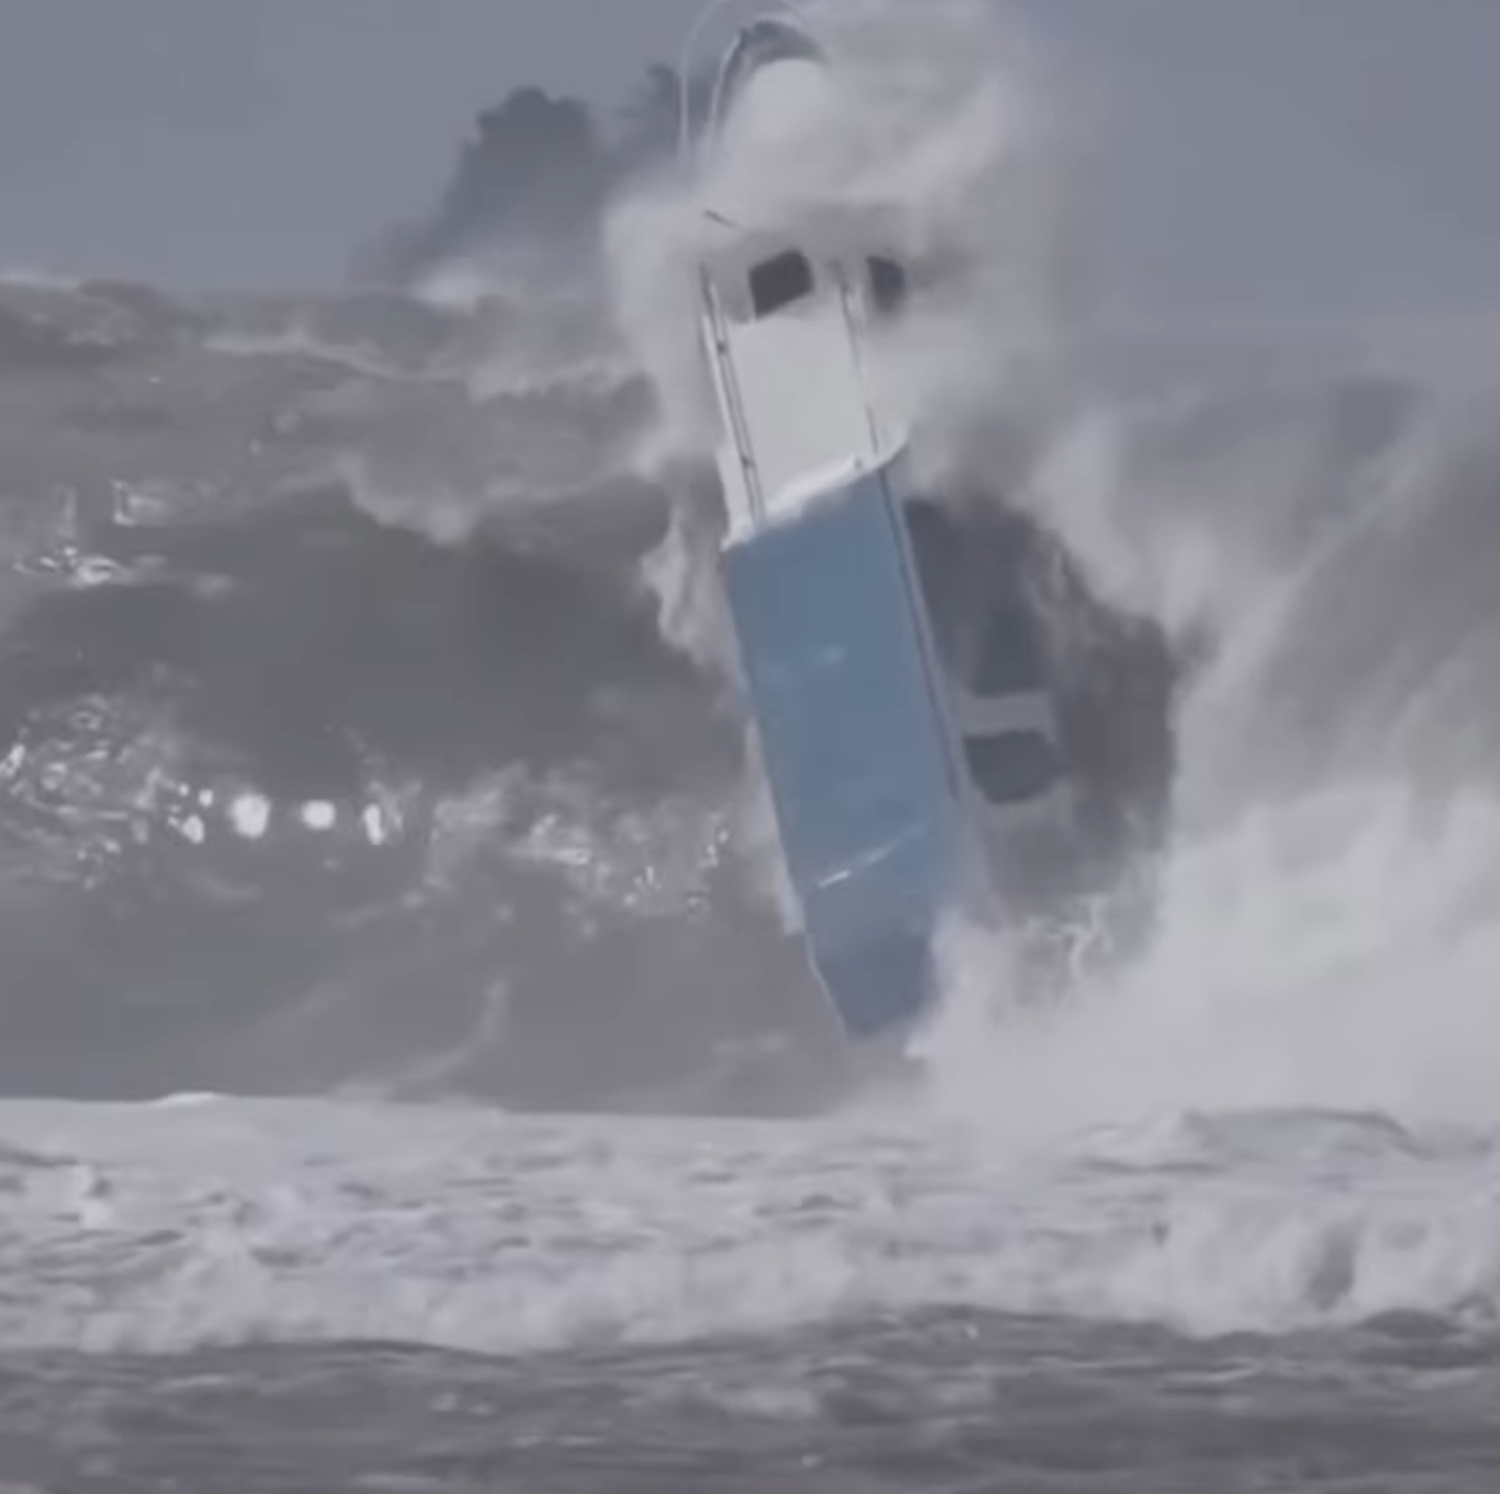 ΒΙΝΤΕΟ: Τεράστιο κύμα χτυπά και αναποδογυρίζει βάρκα! - e-Nautilia.gr | Το Ελληνικό Portal για την Ναυτιλία. Τελευταία νέα, άρθρα, Οπτικοακουστικό Υλικό